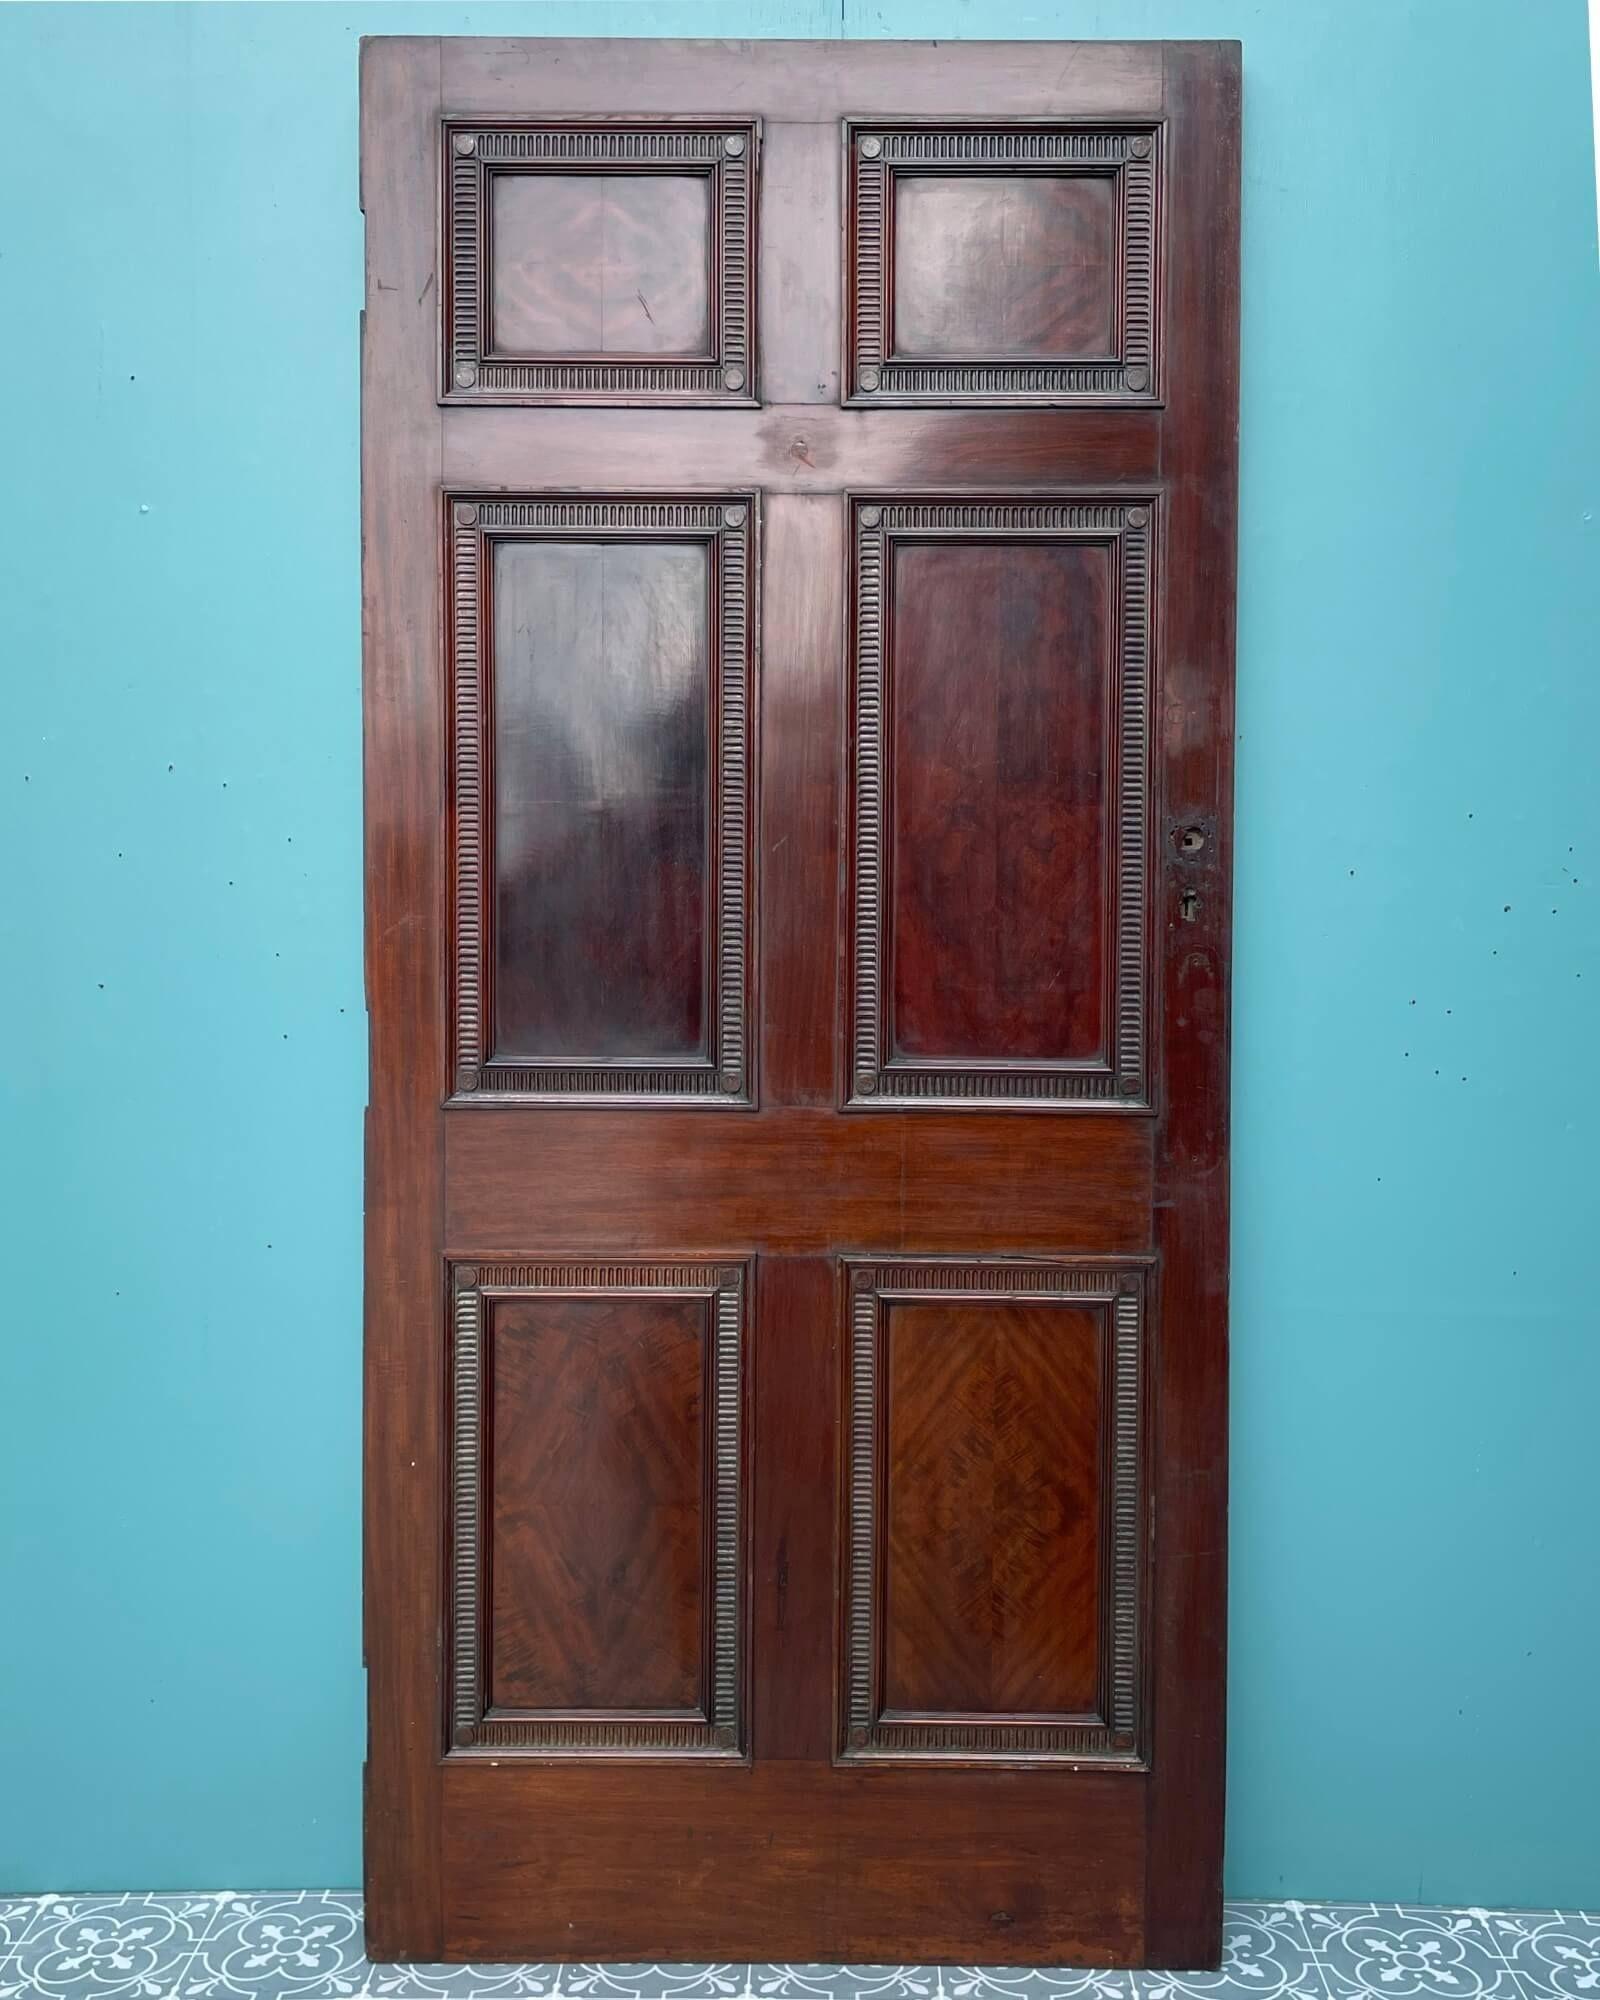 6 panel mahogany interior doors